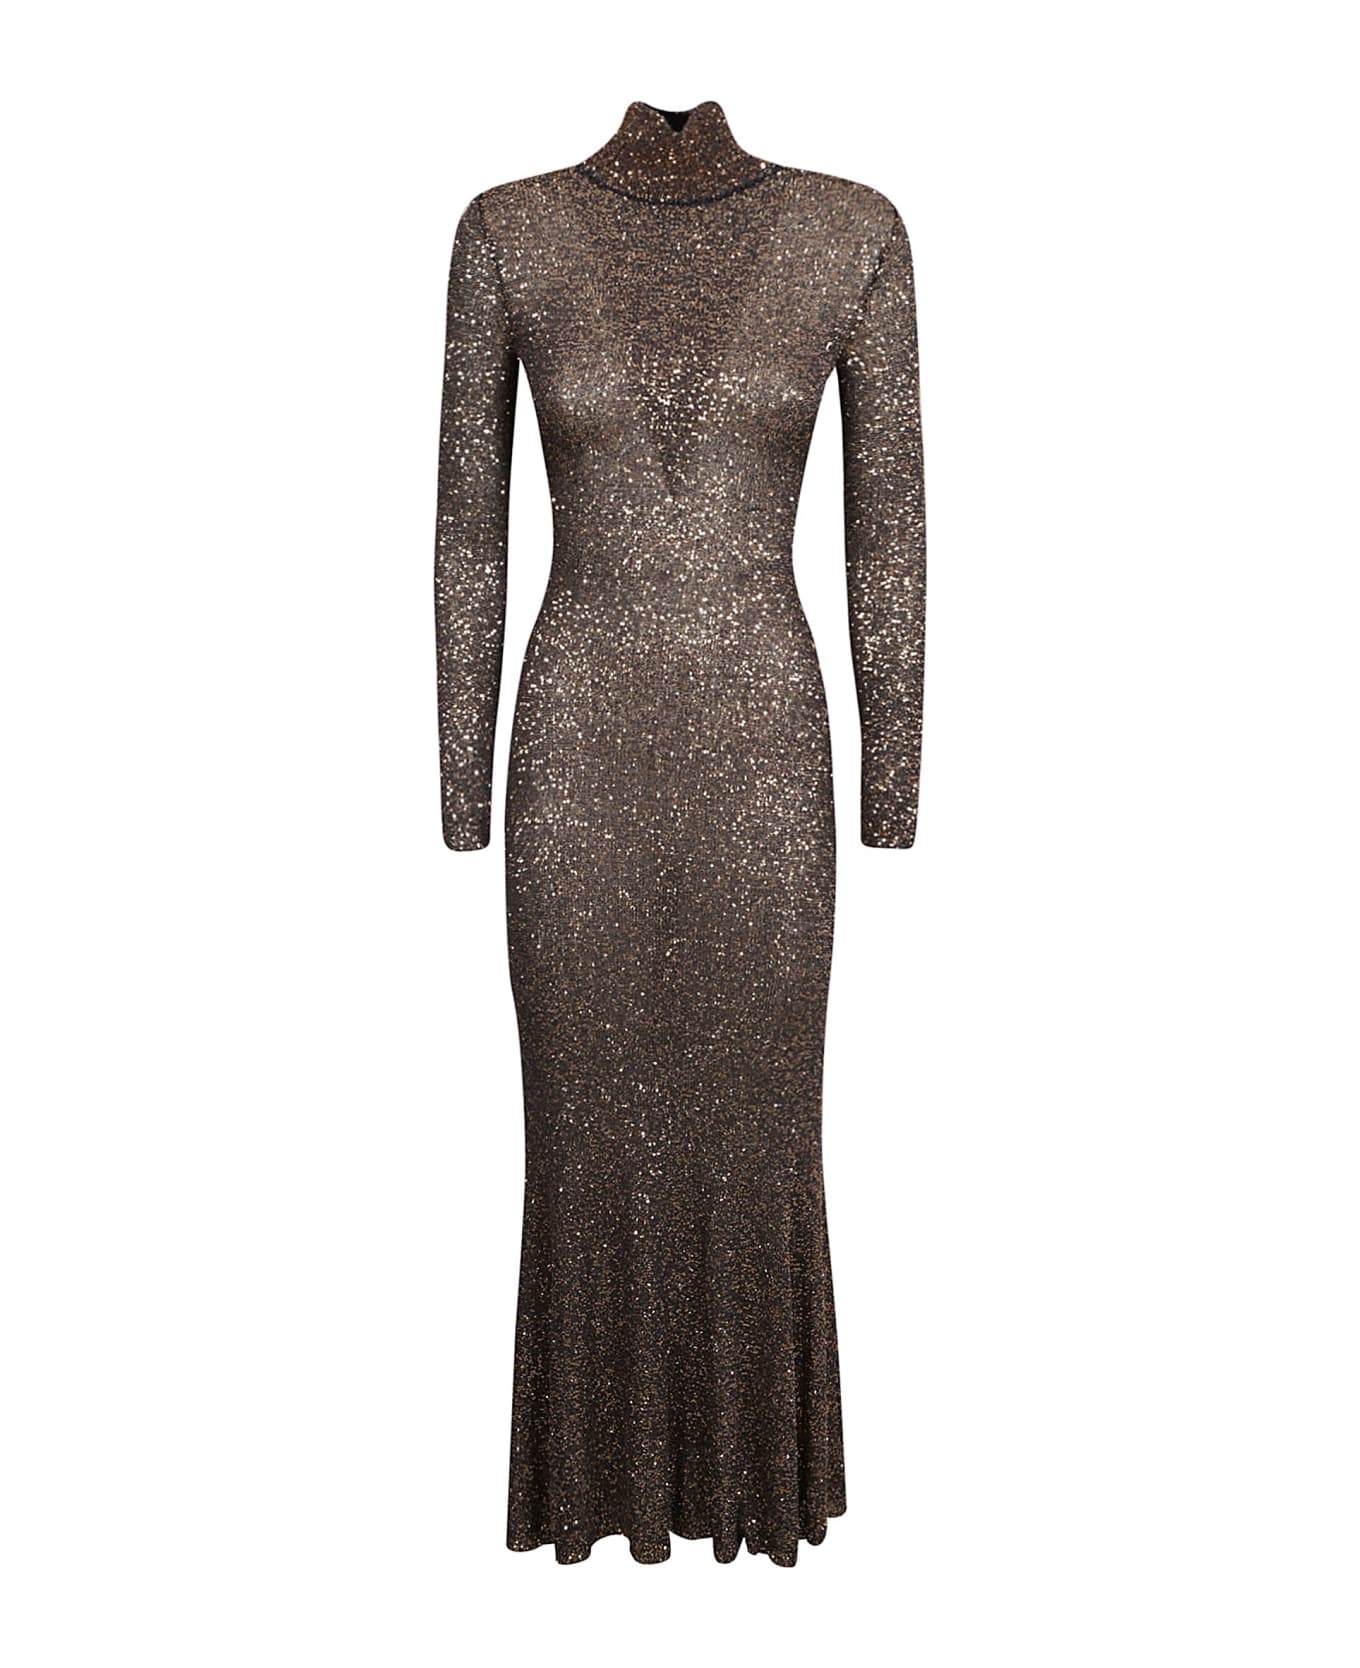 Balenciaga Maxi Sequin Dress - Brown/Gold